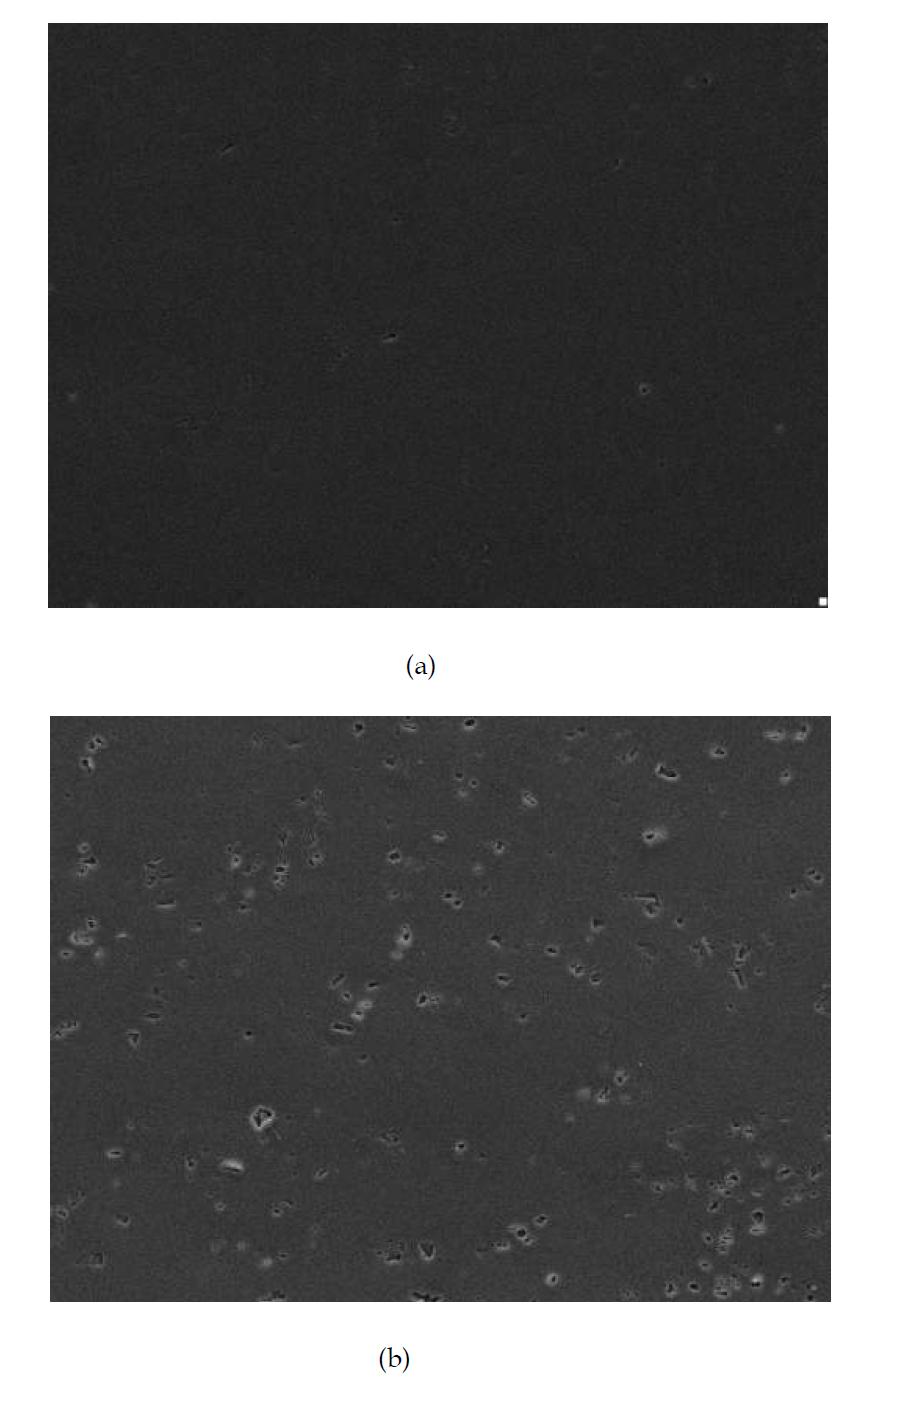 고 순도 알루미늄과 Al6061피막 표면사진 X1,000(경면 폴리싱)(a)고 순도 알루미늄 (b) Al6061